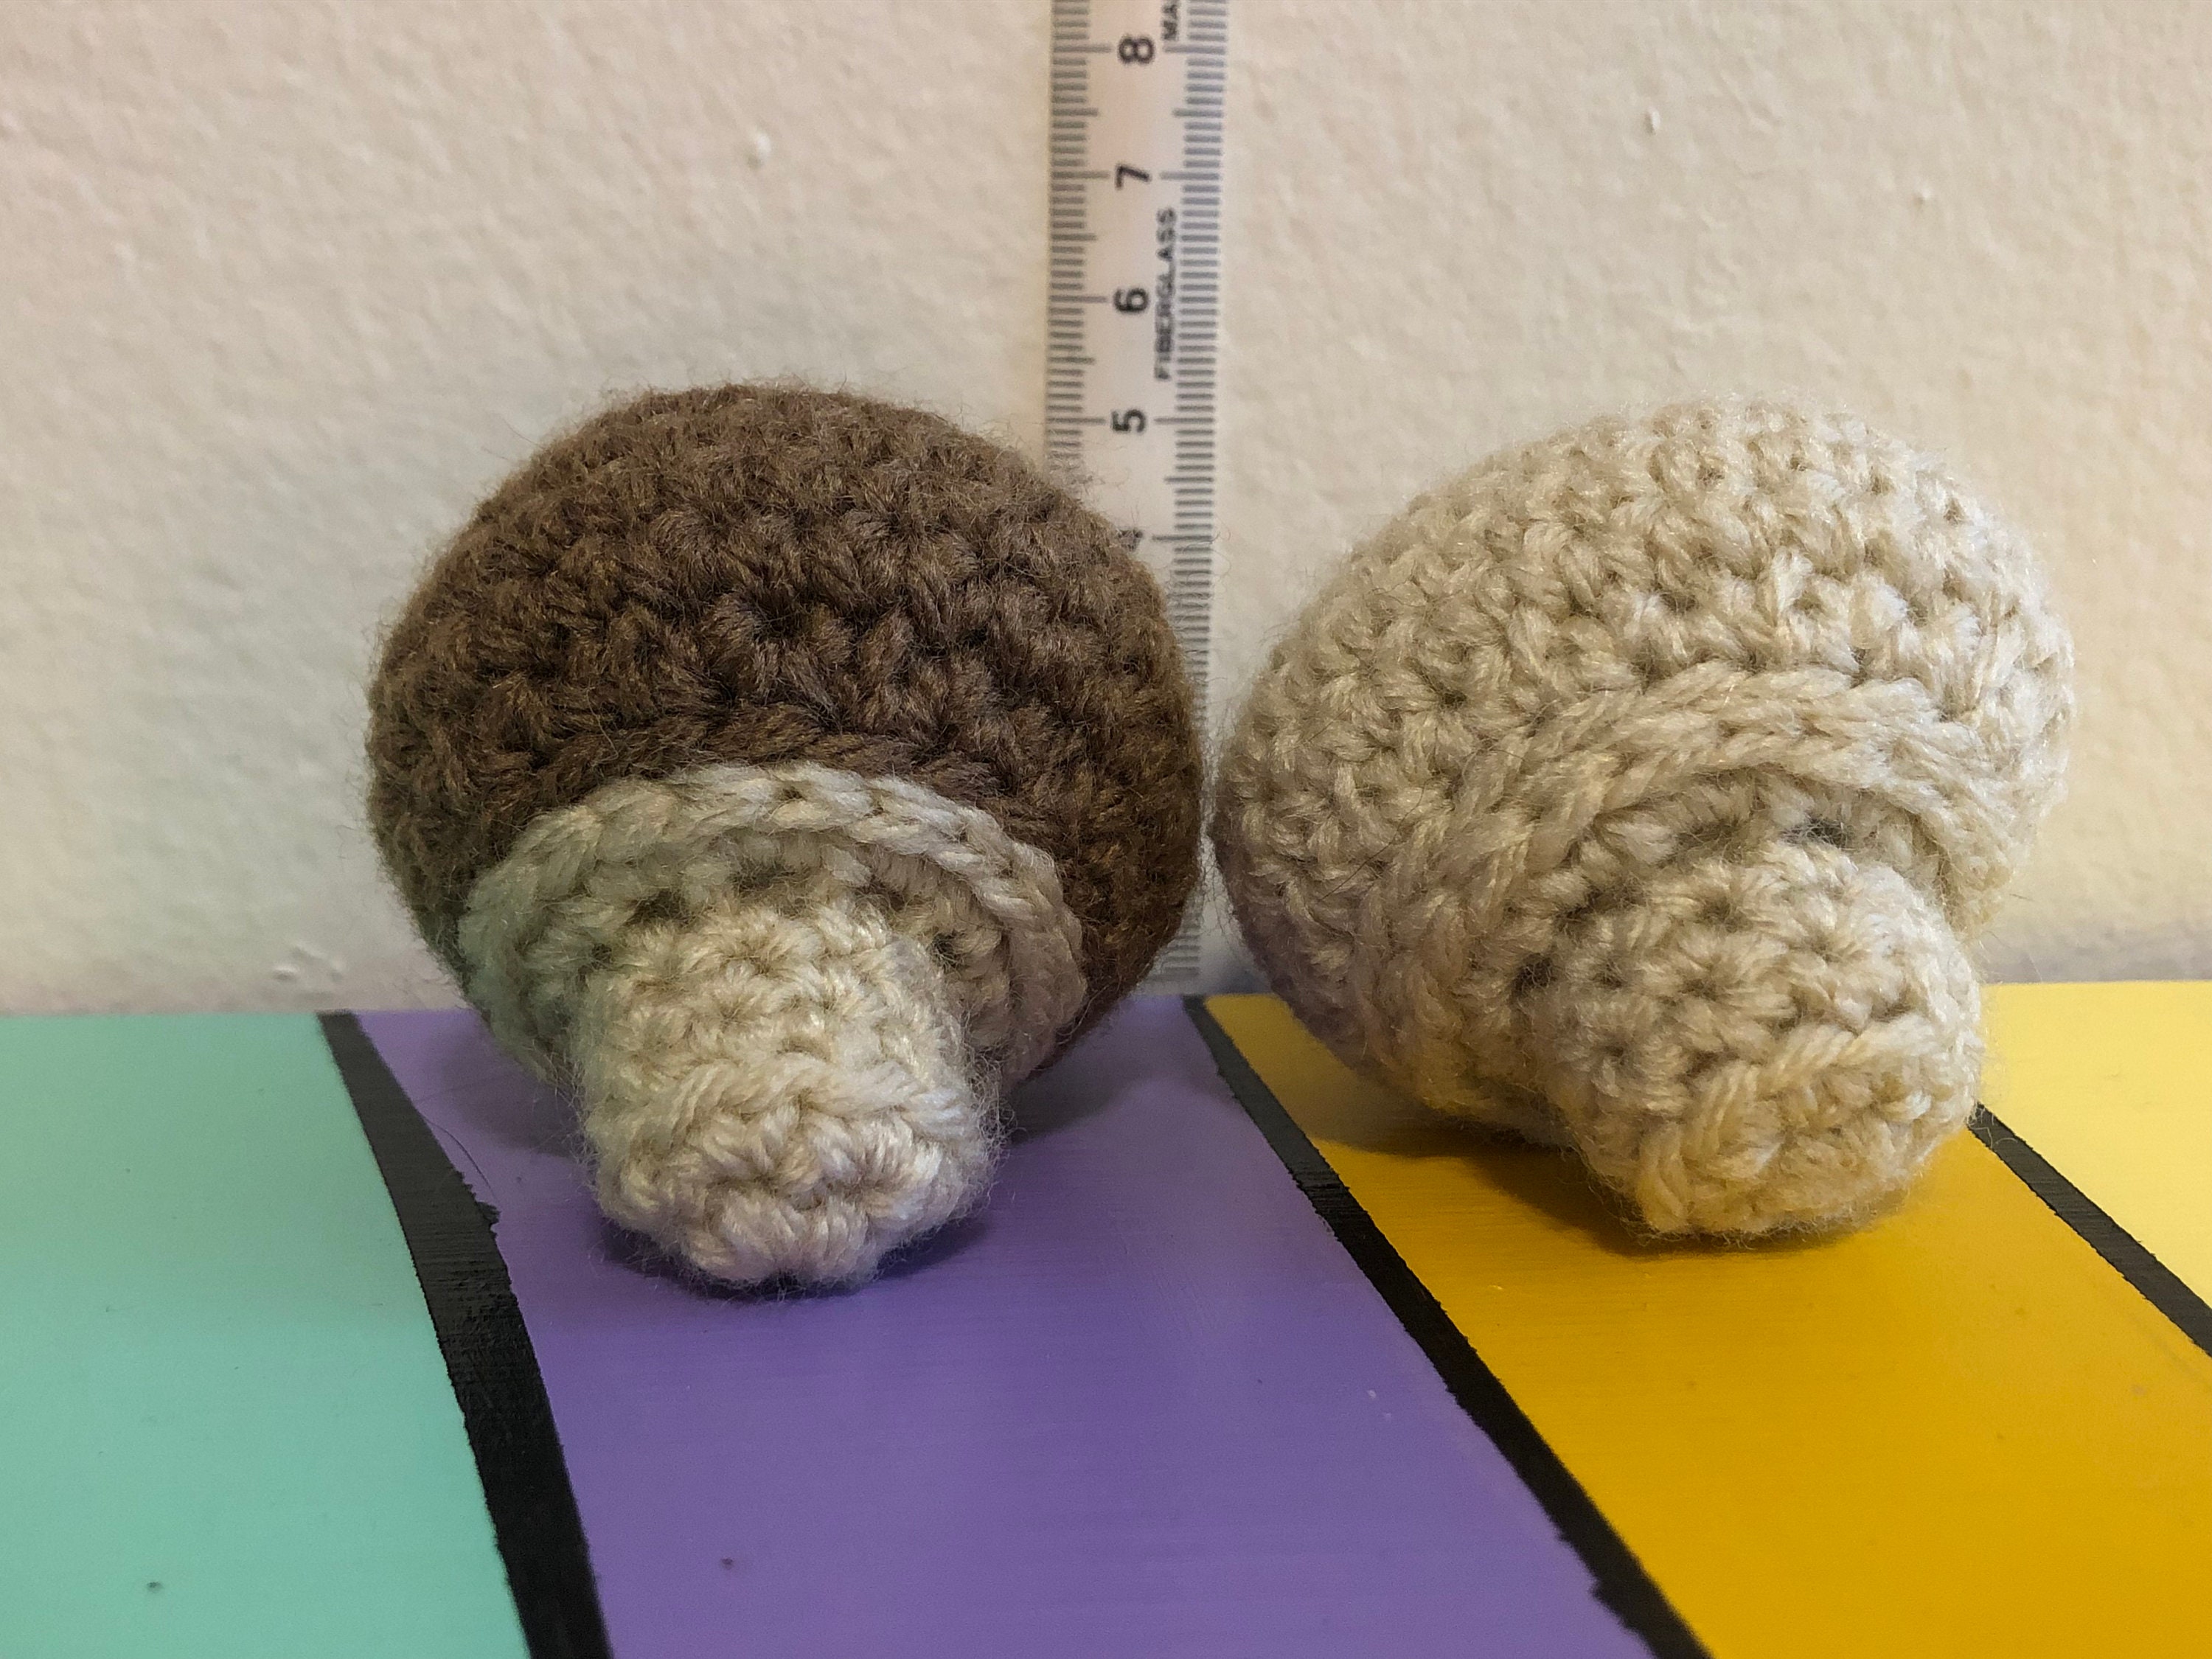 Button Mushroom Crochet Vegetable Kit